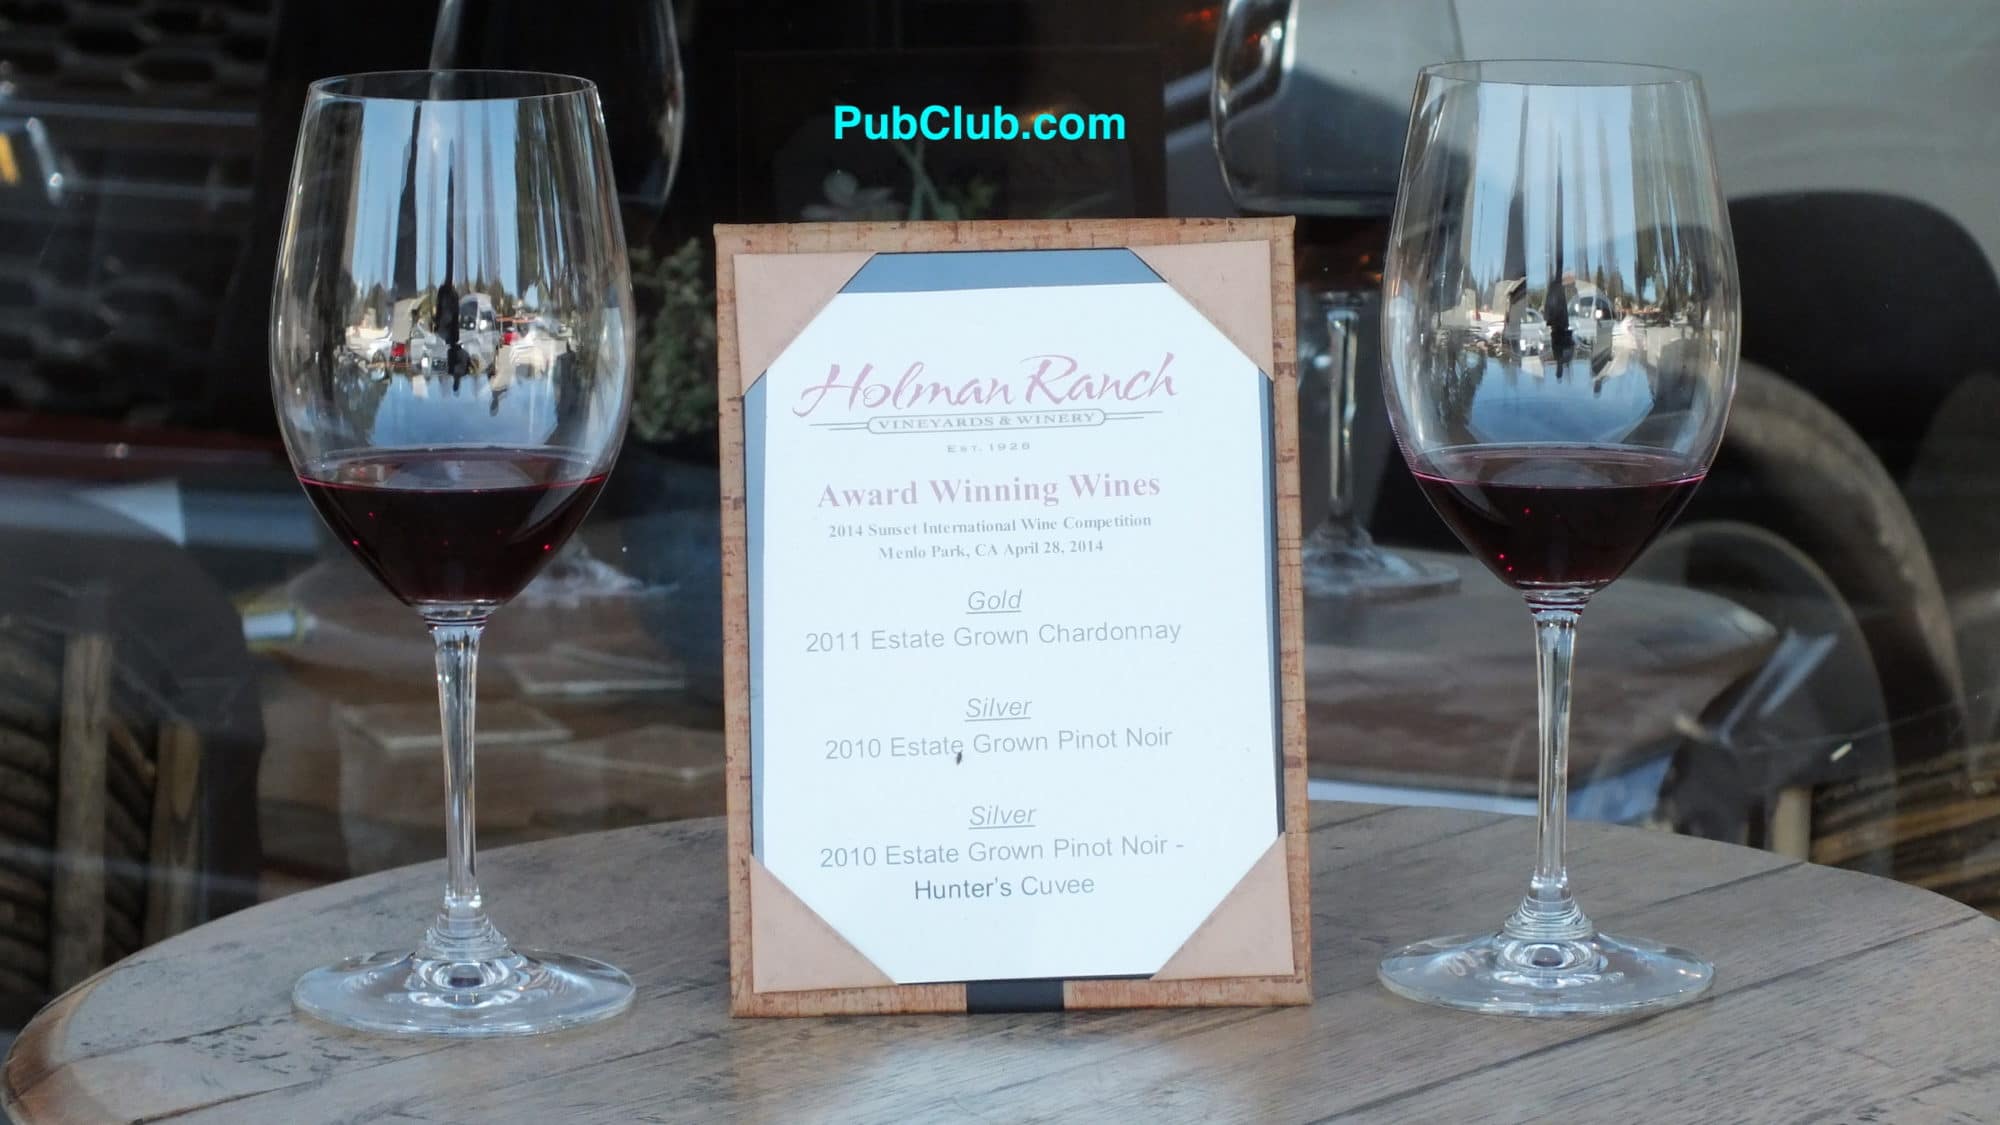 Holman Ranch Tasting Room Carmel Valley, CA National Wine Day